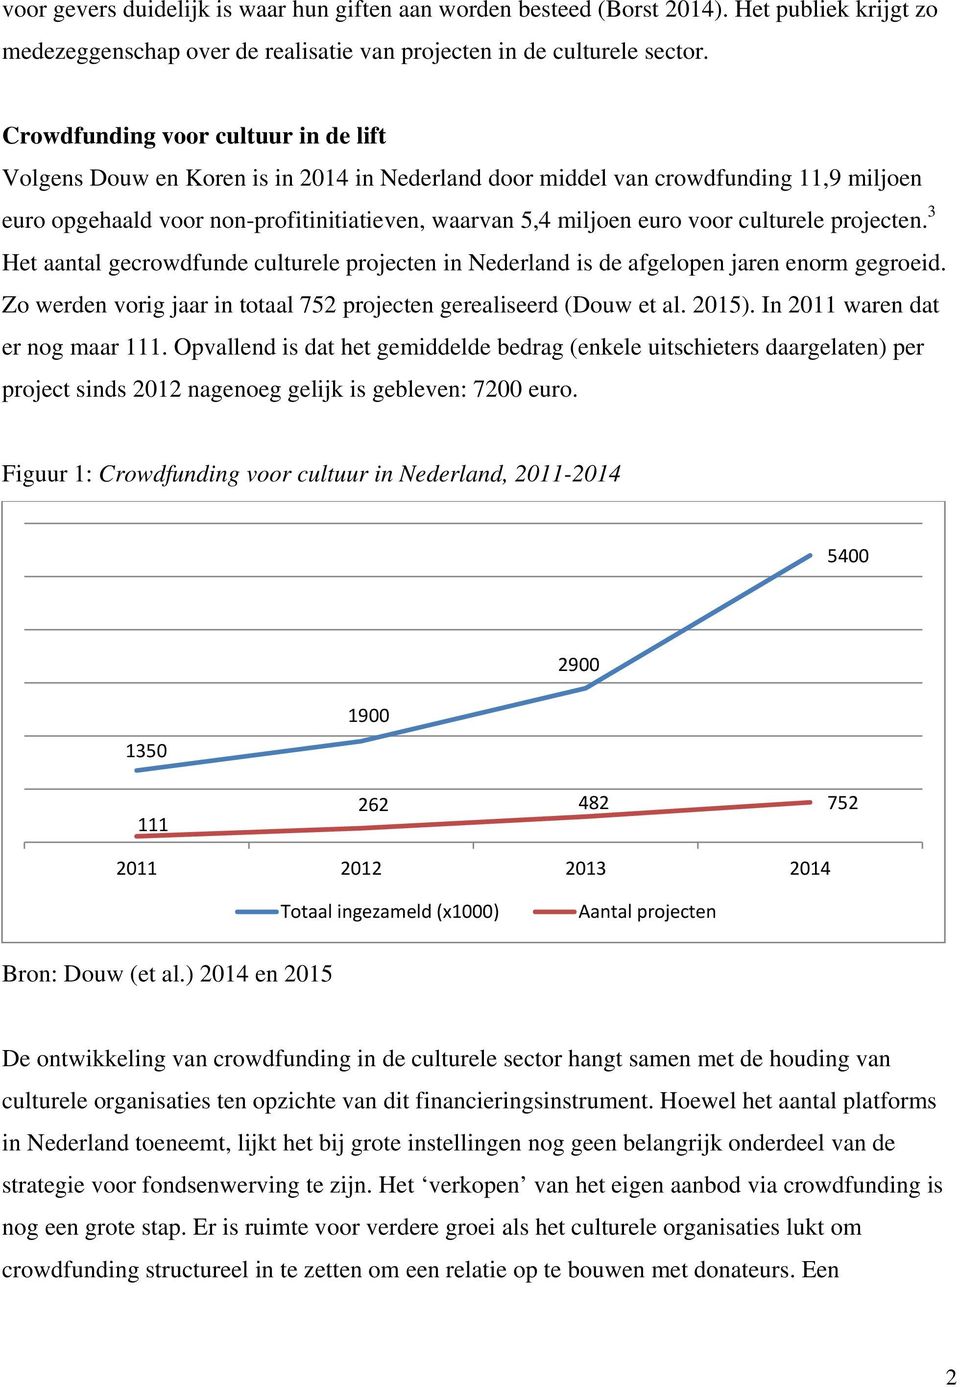 culturele projecten. 3 Het aantal gecrowdfunde culturele projecten in Nederland is de afgelopen jaren enorm gegroeid. Zo werden vorig jaar in totaal 752 projecten gerealiseerd (Douw et al. 2015).